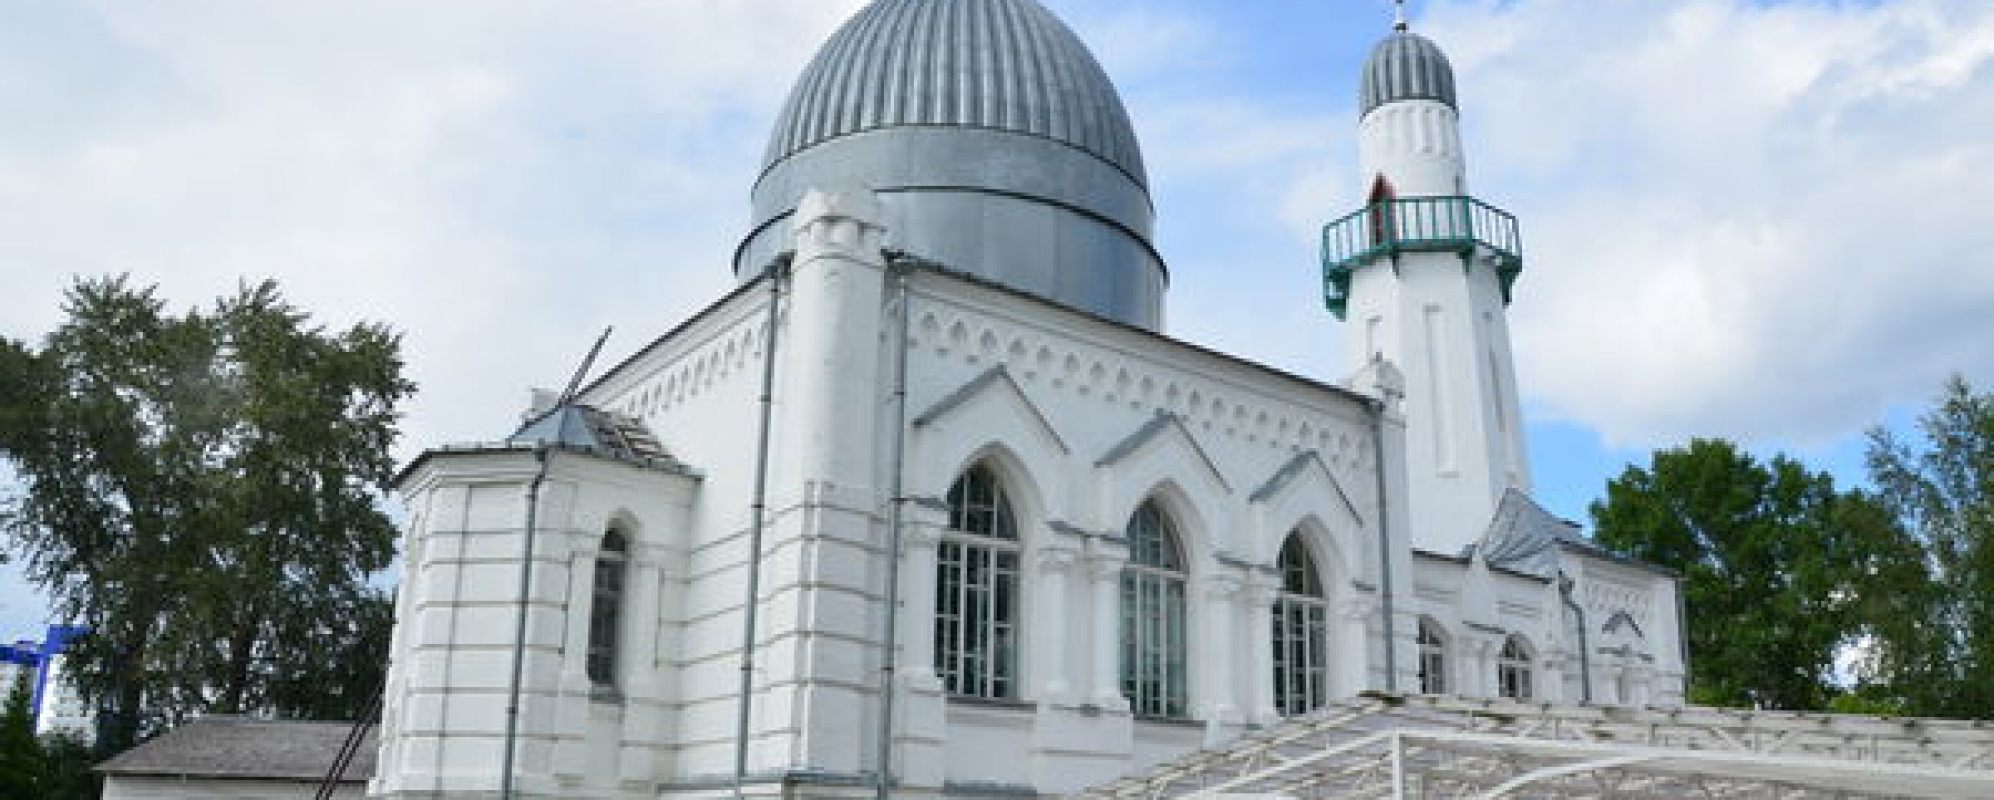 Фотографии достопримечательности Белая мечеть